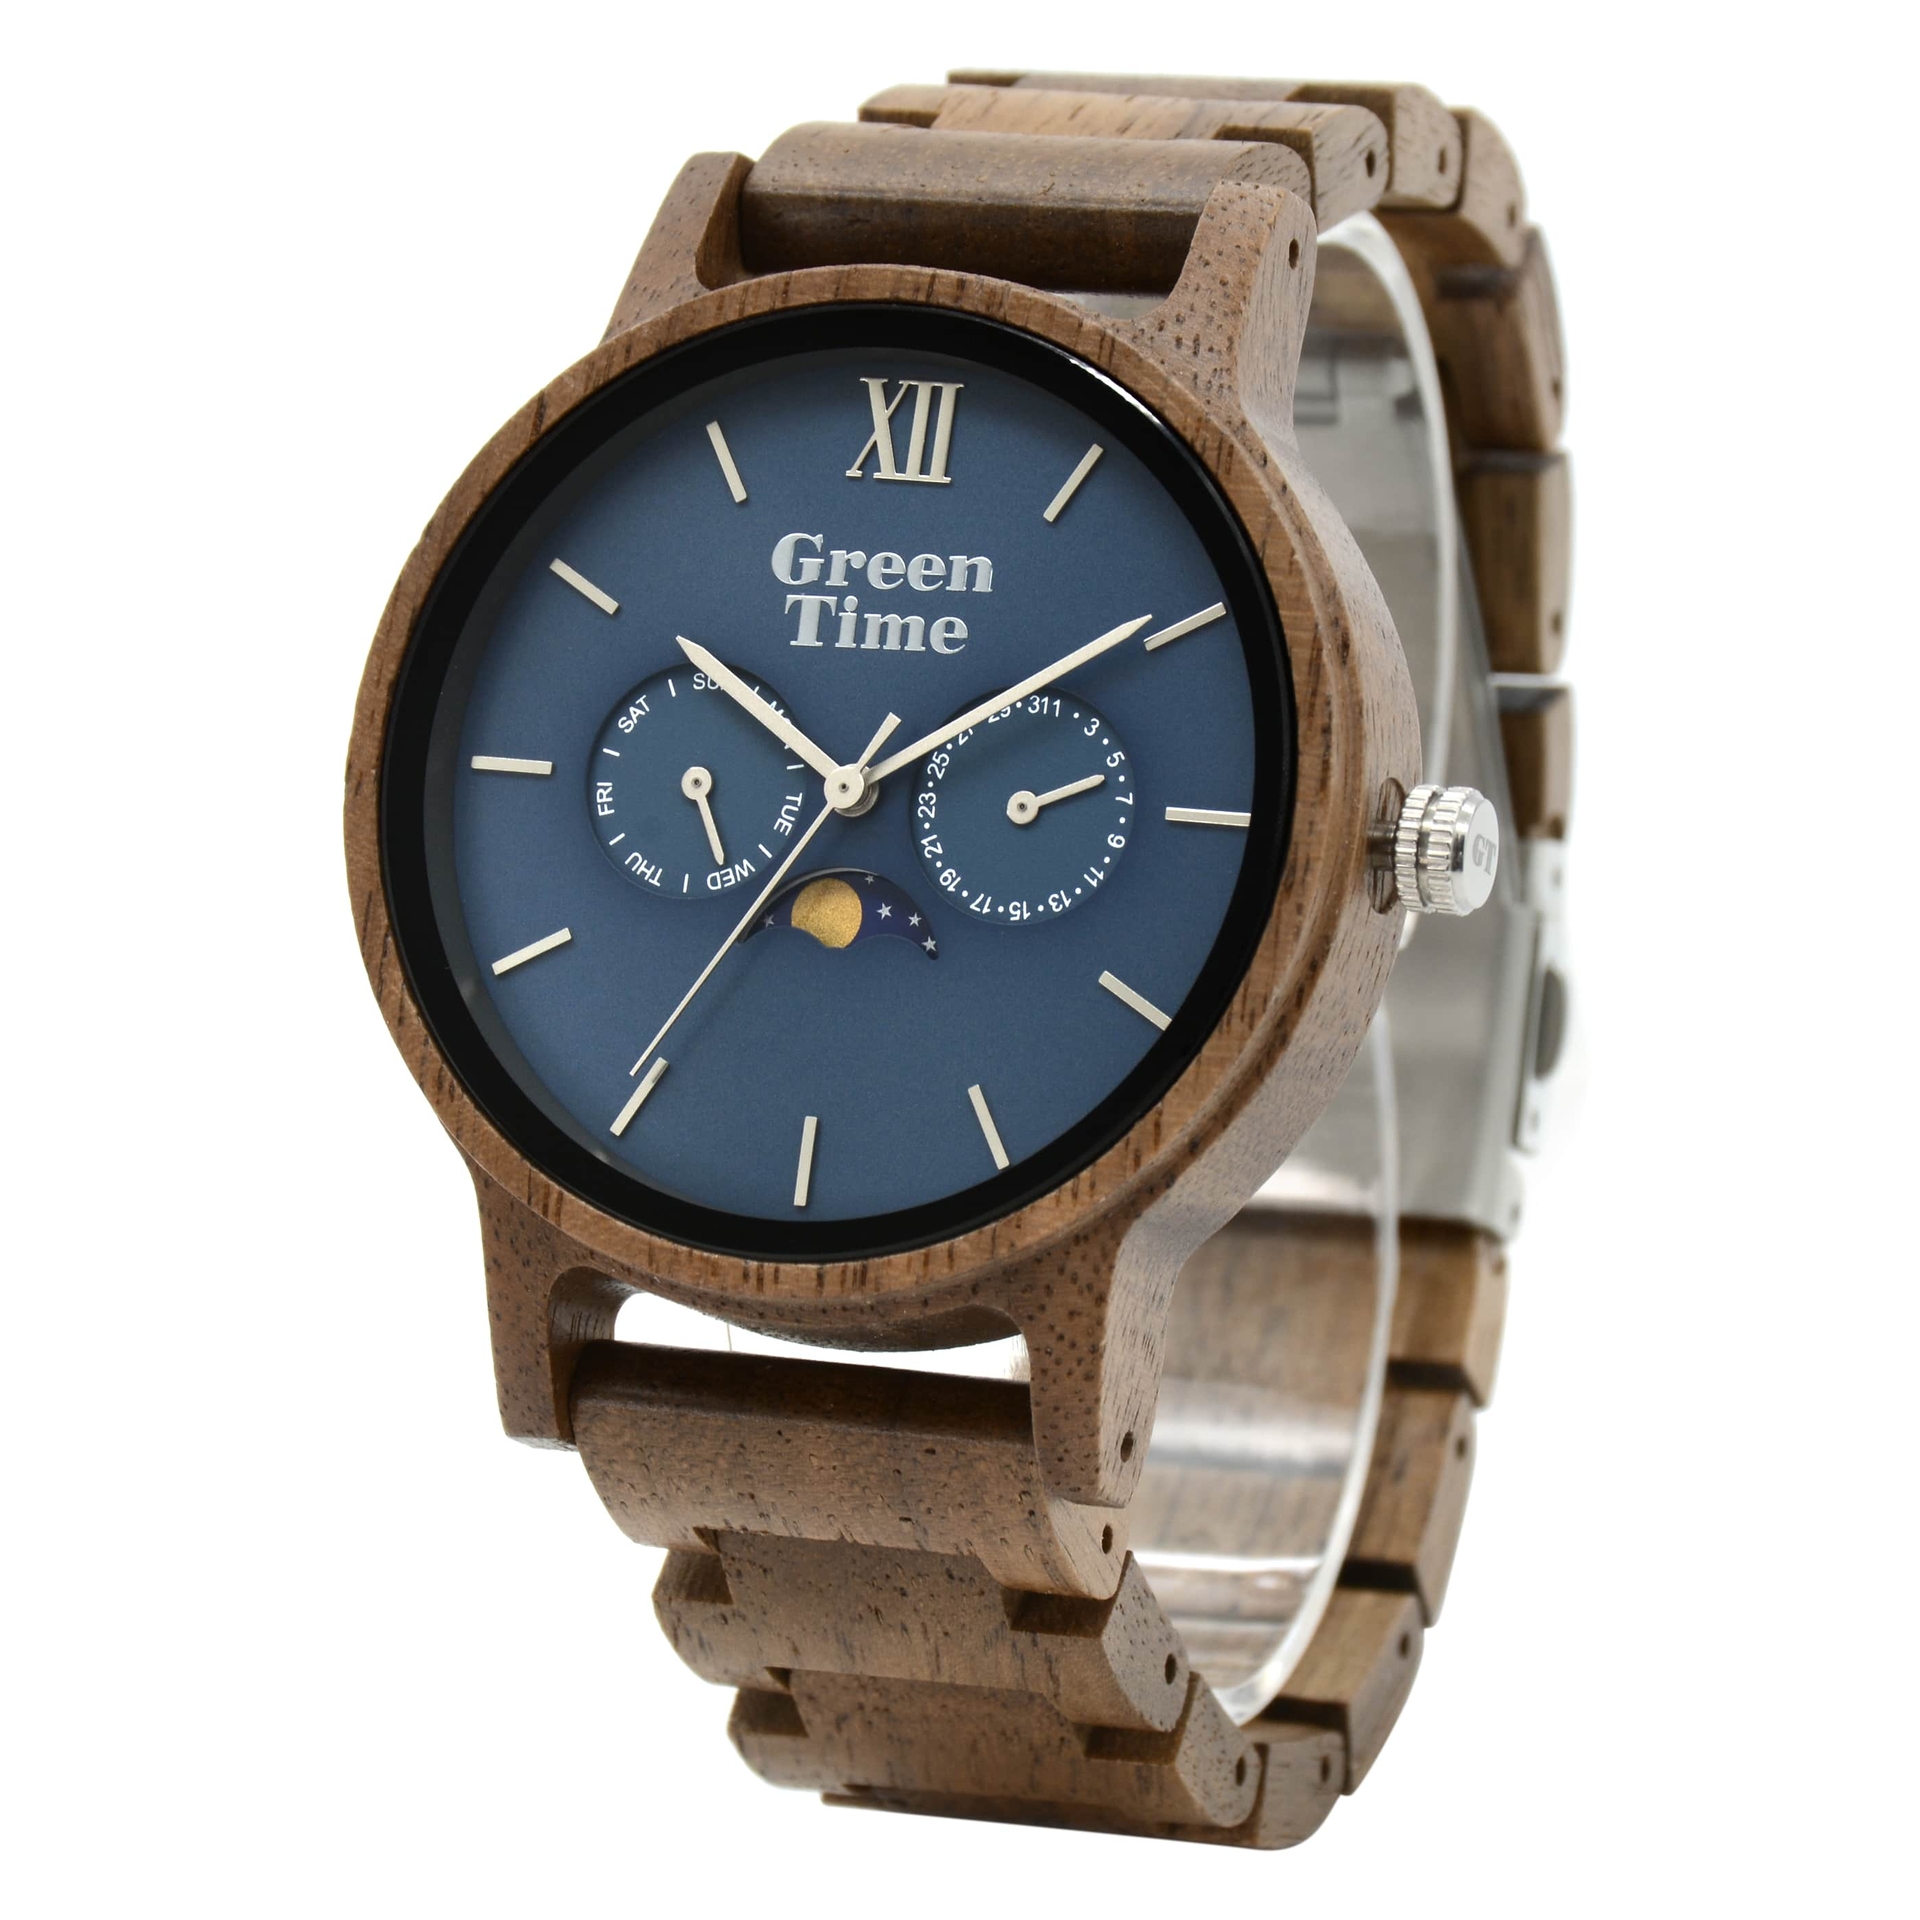 Laden für Originalprodukte Duurzame houten GreenTime horloges - wood Greentime watch